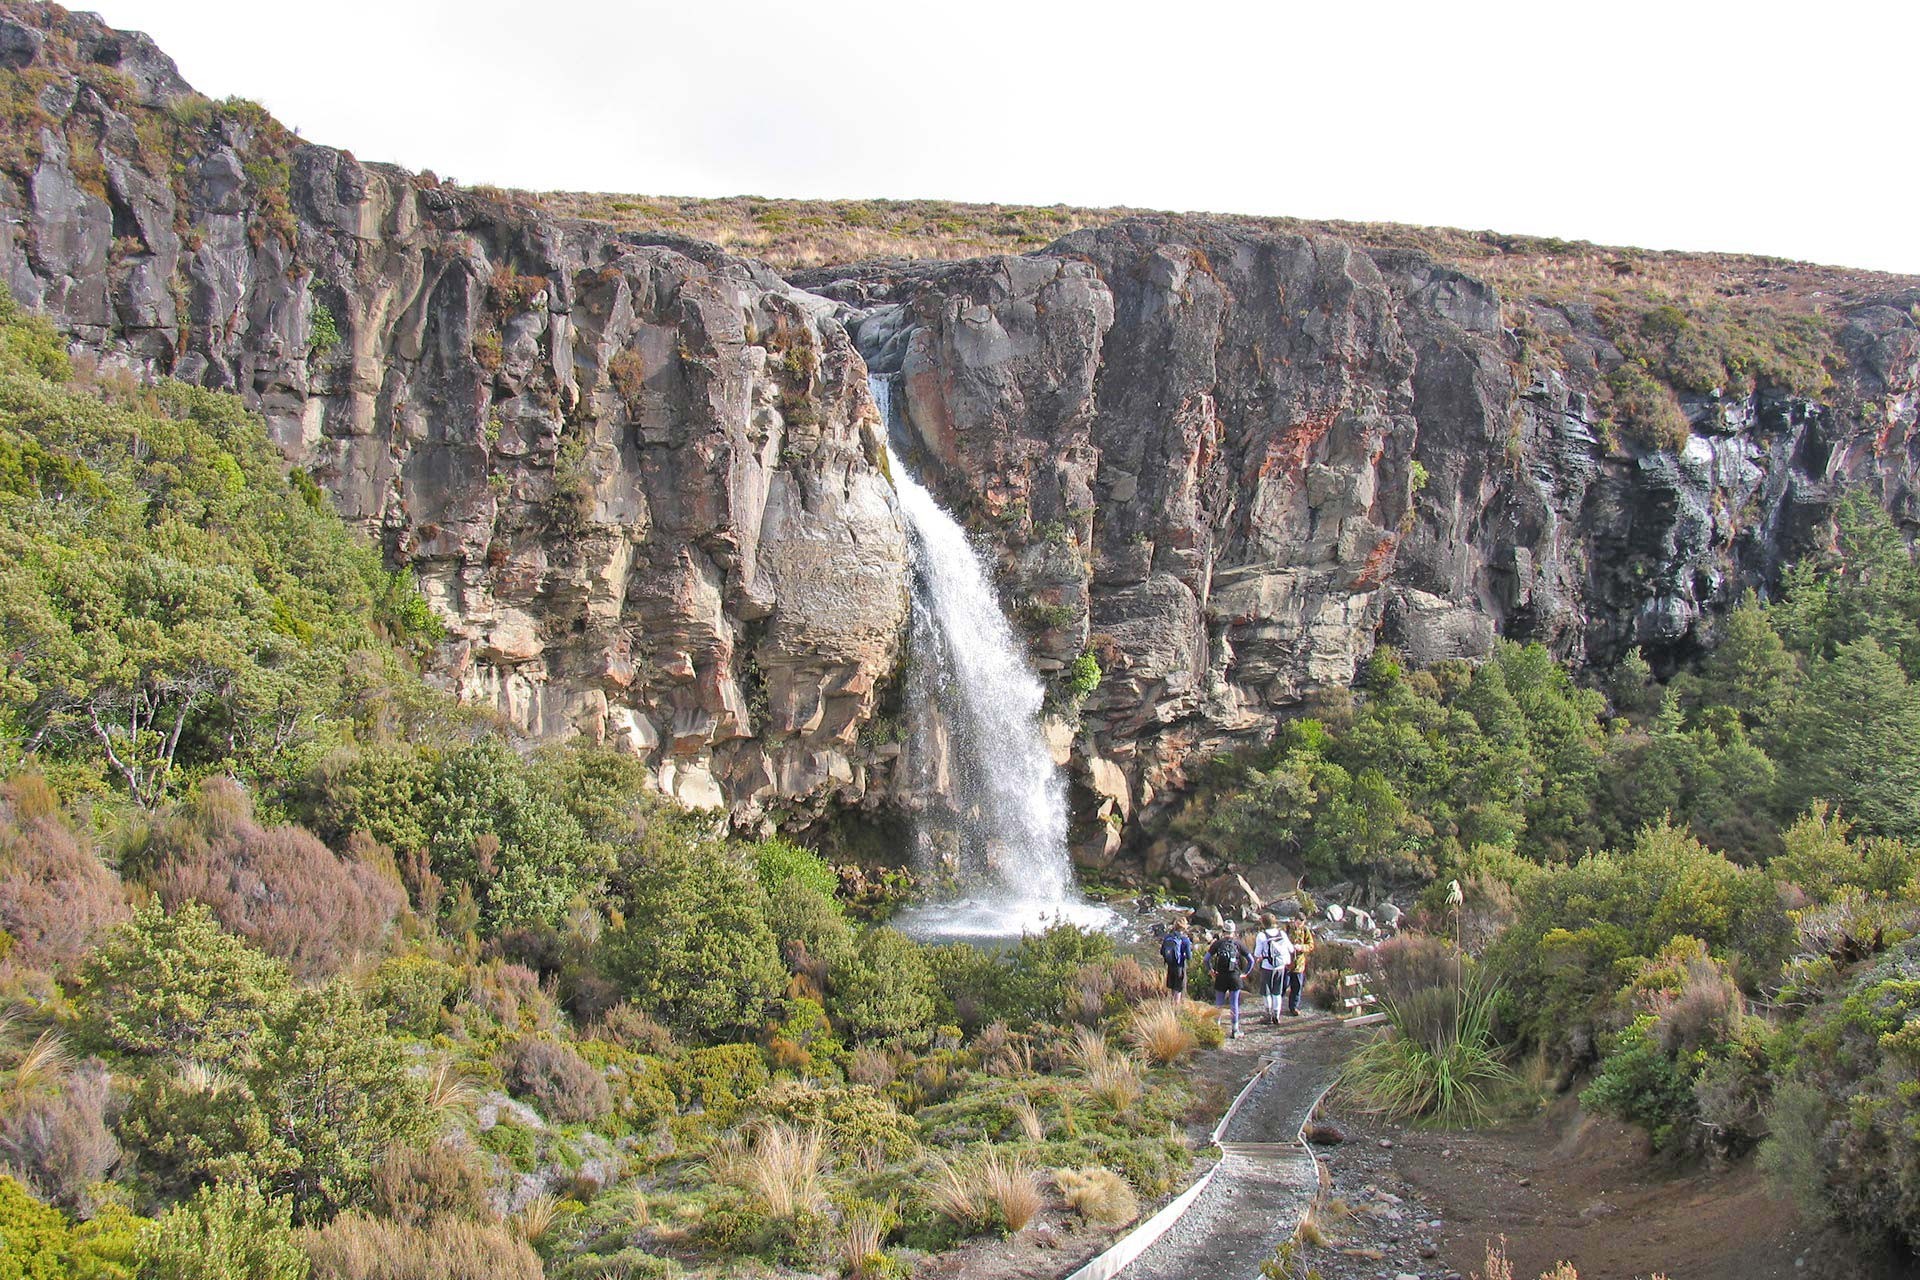 Walk to the Taranaki falls, Tongariro National Park